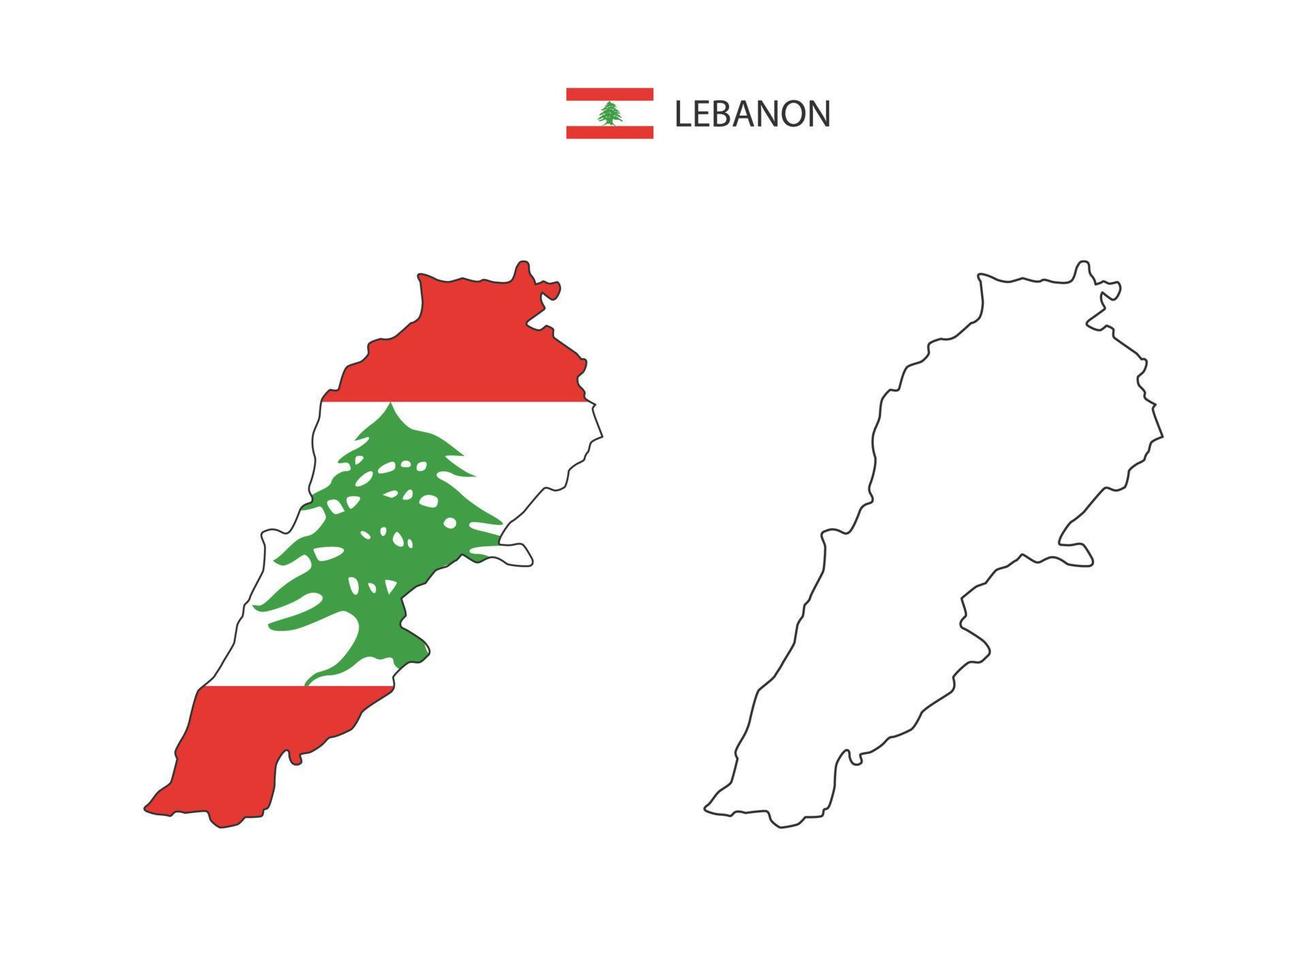 vetor da cidade do mapa do líbano dividido pelo estilo de simplicidade do esboço. tem 2 versões, versão de linha fina preta e cor da versão da bandeira do país. ambos os mapas estavam no fundo branco.